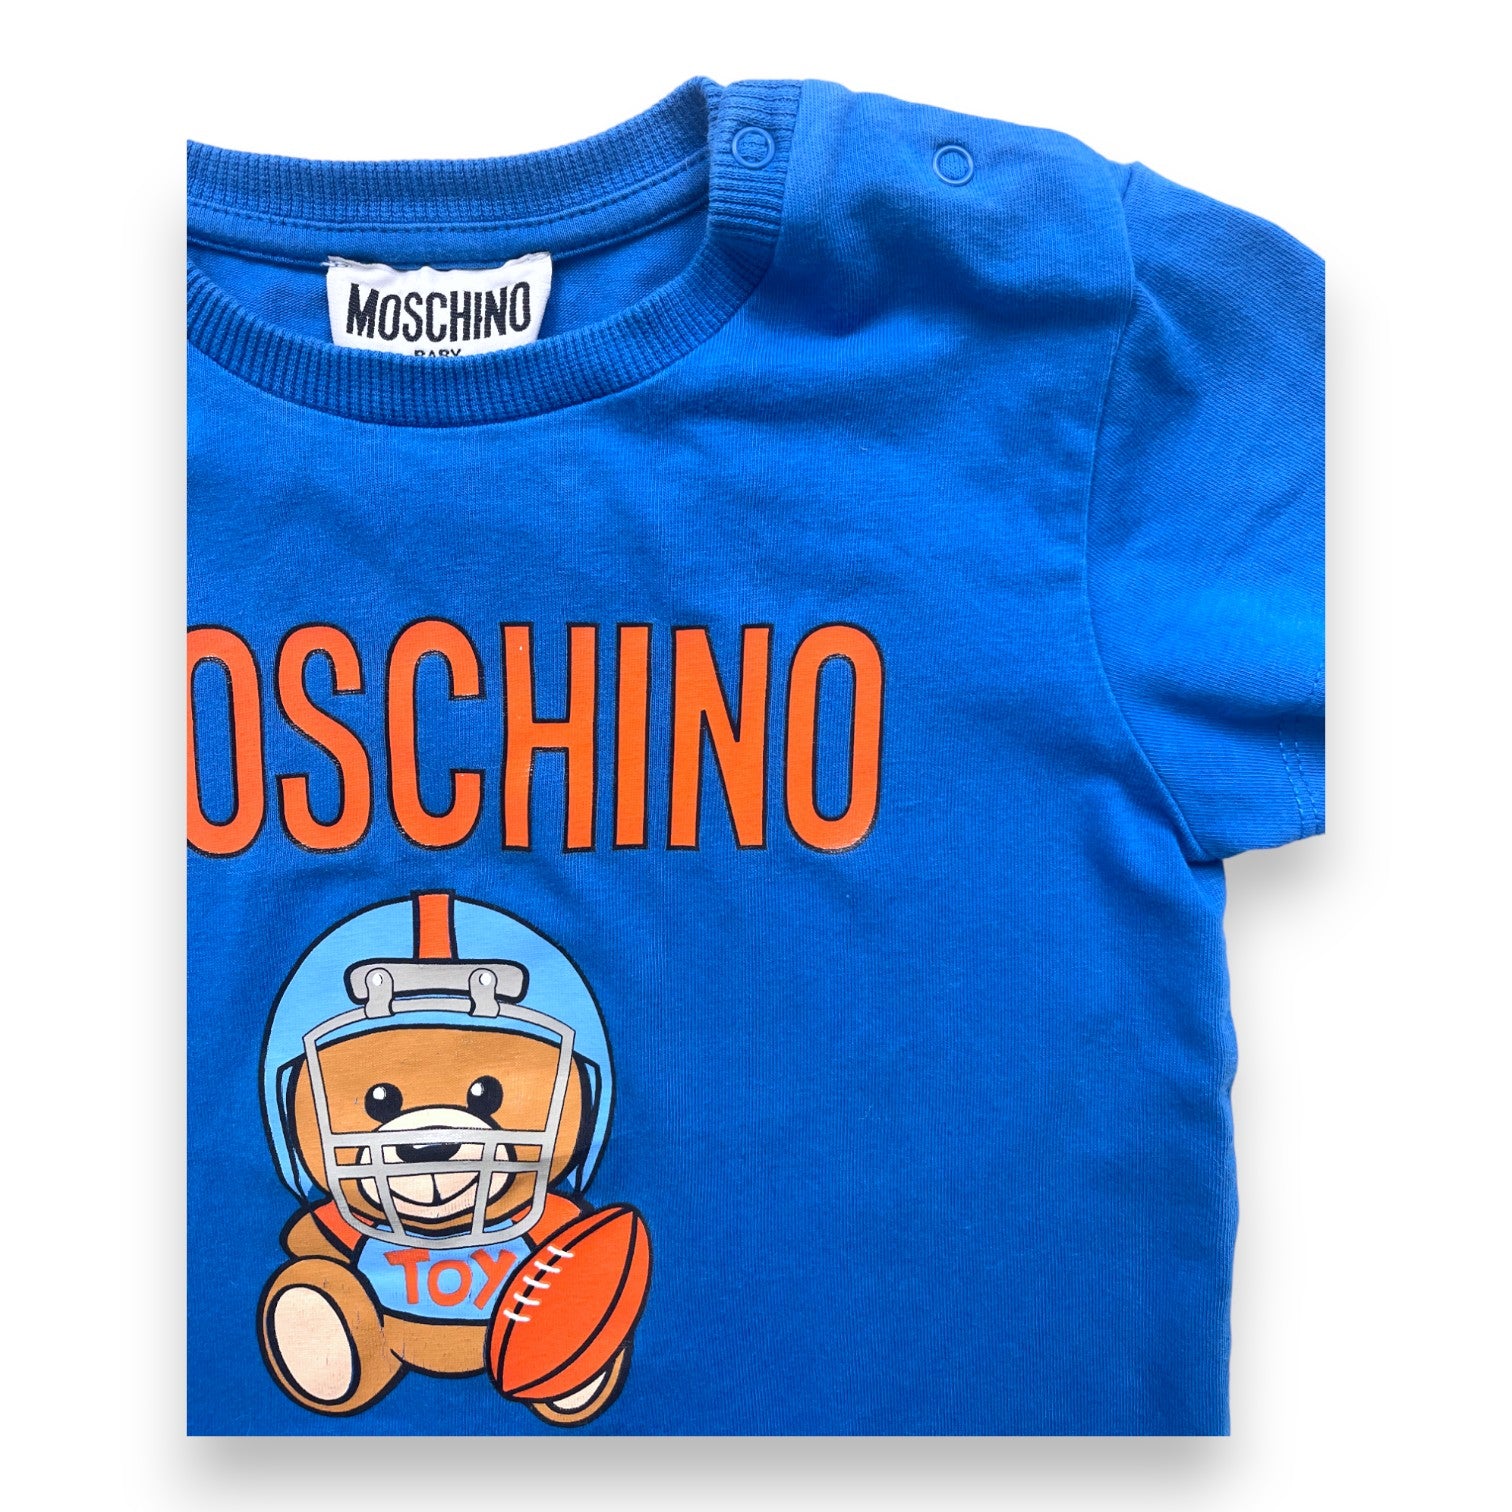 MOSCHINO - T shirt bleu à imprimé - 2 ans